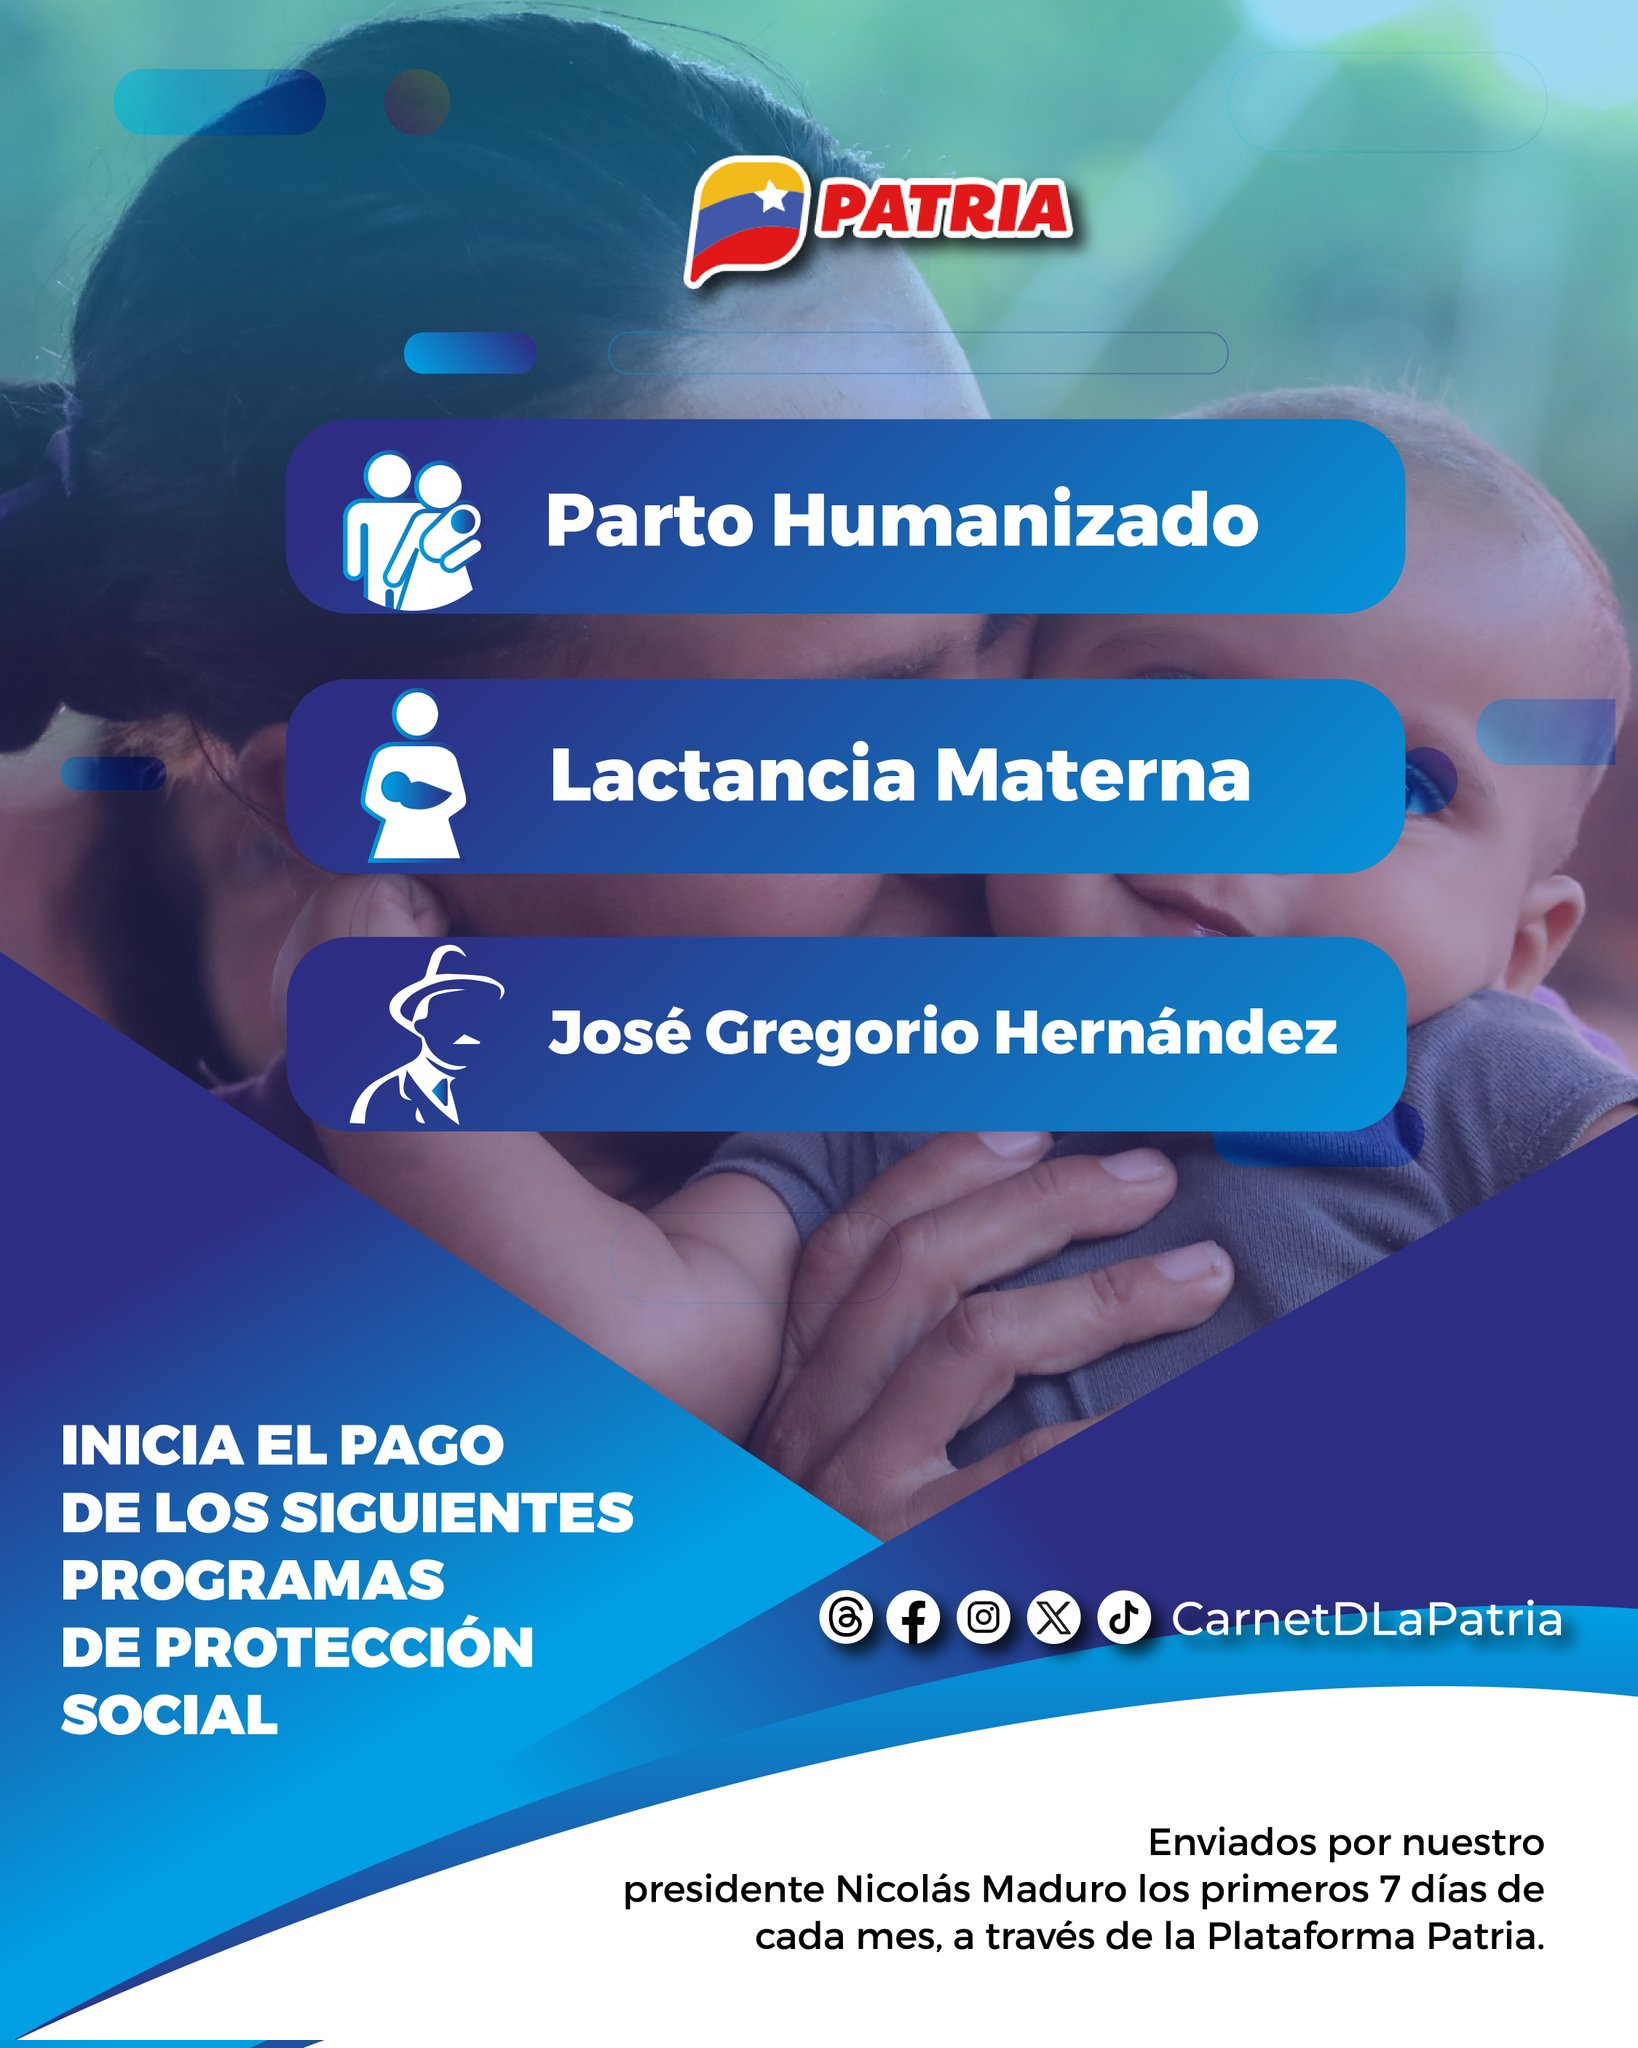 El Bono Parto Humanizado comparte fecha de pago y monto con el Bono Lactancia Materna. Foto: Carnet de la Patria/X